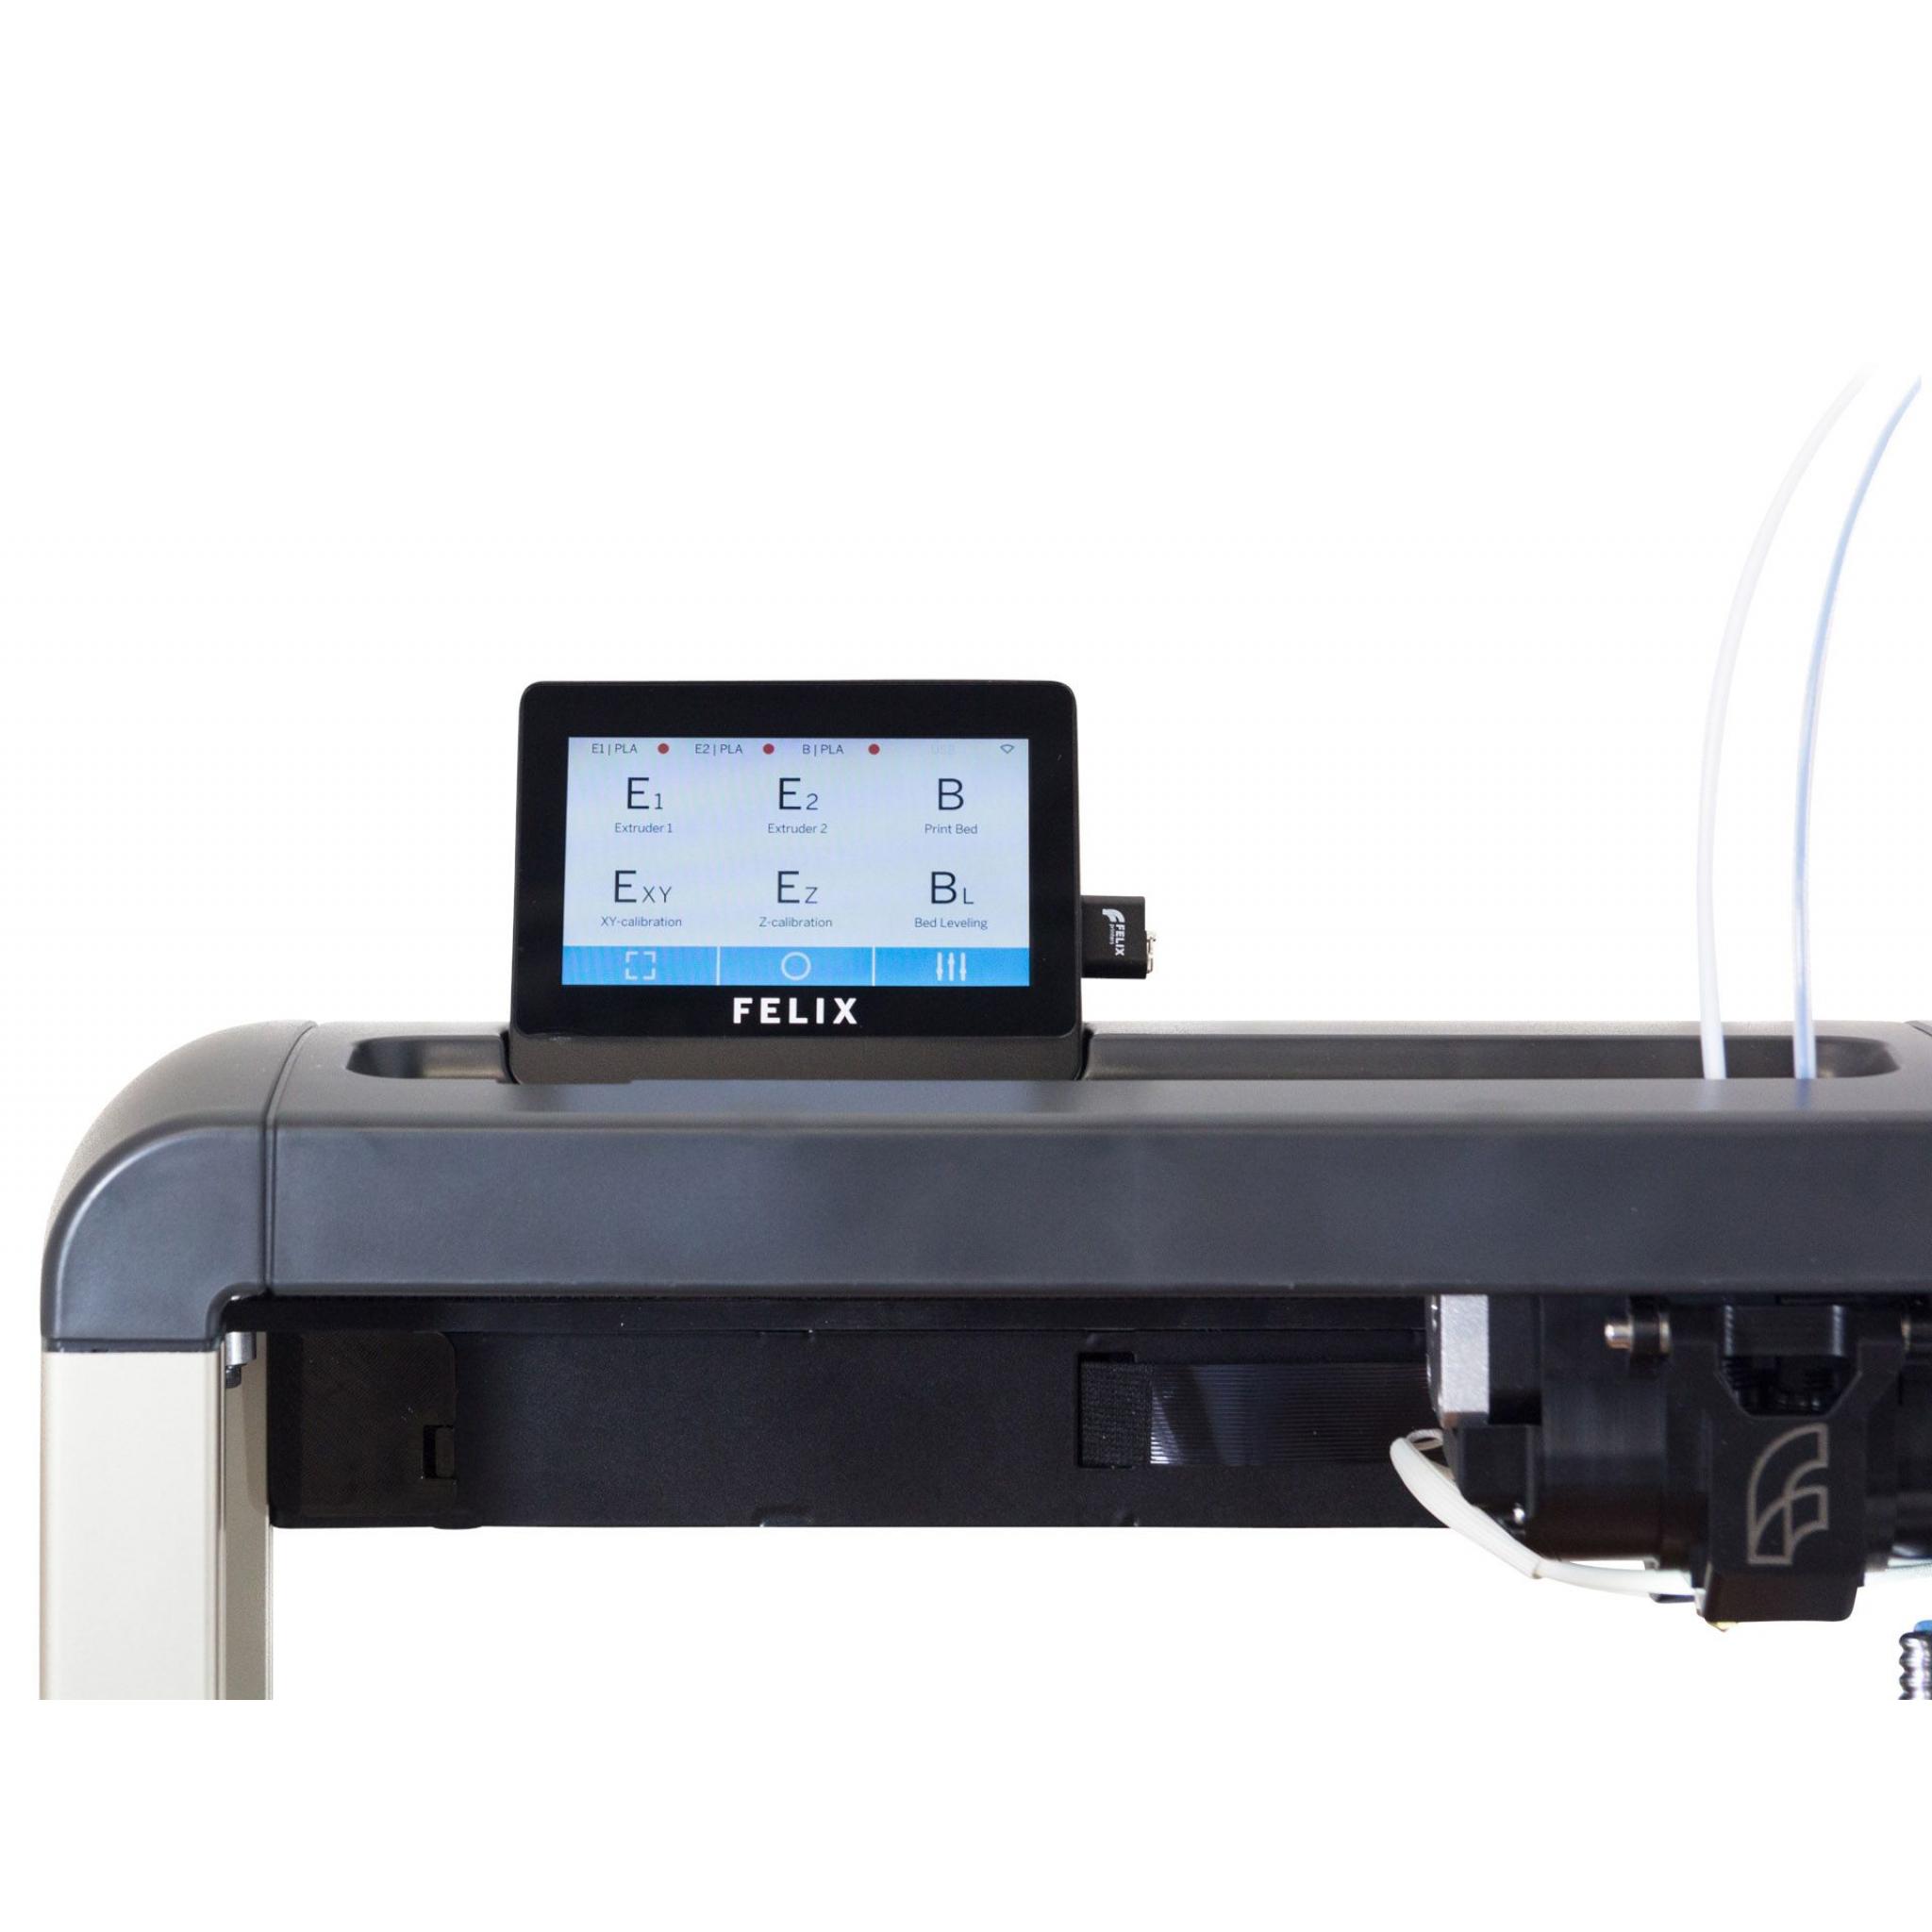 Felix Pro 2 Touch 3D printer - A9b43589f8c070a0D6bbe1840c5eD684